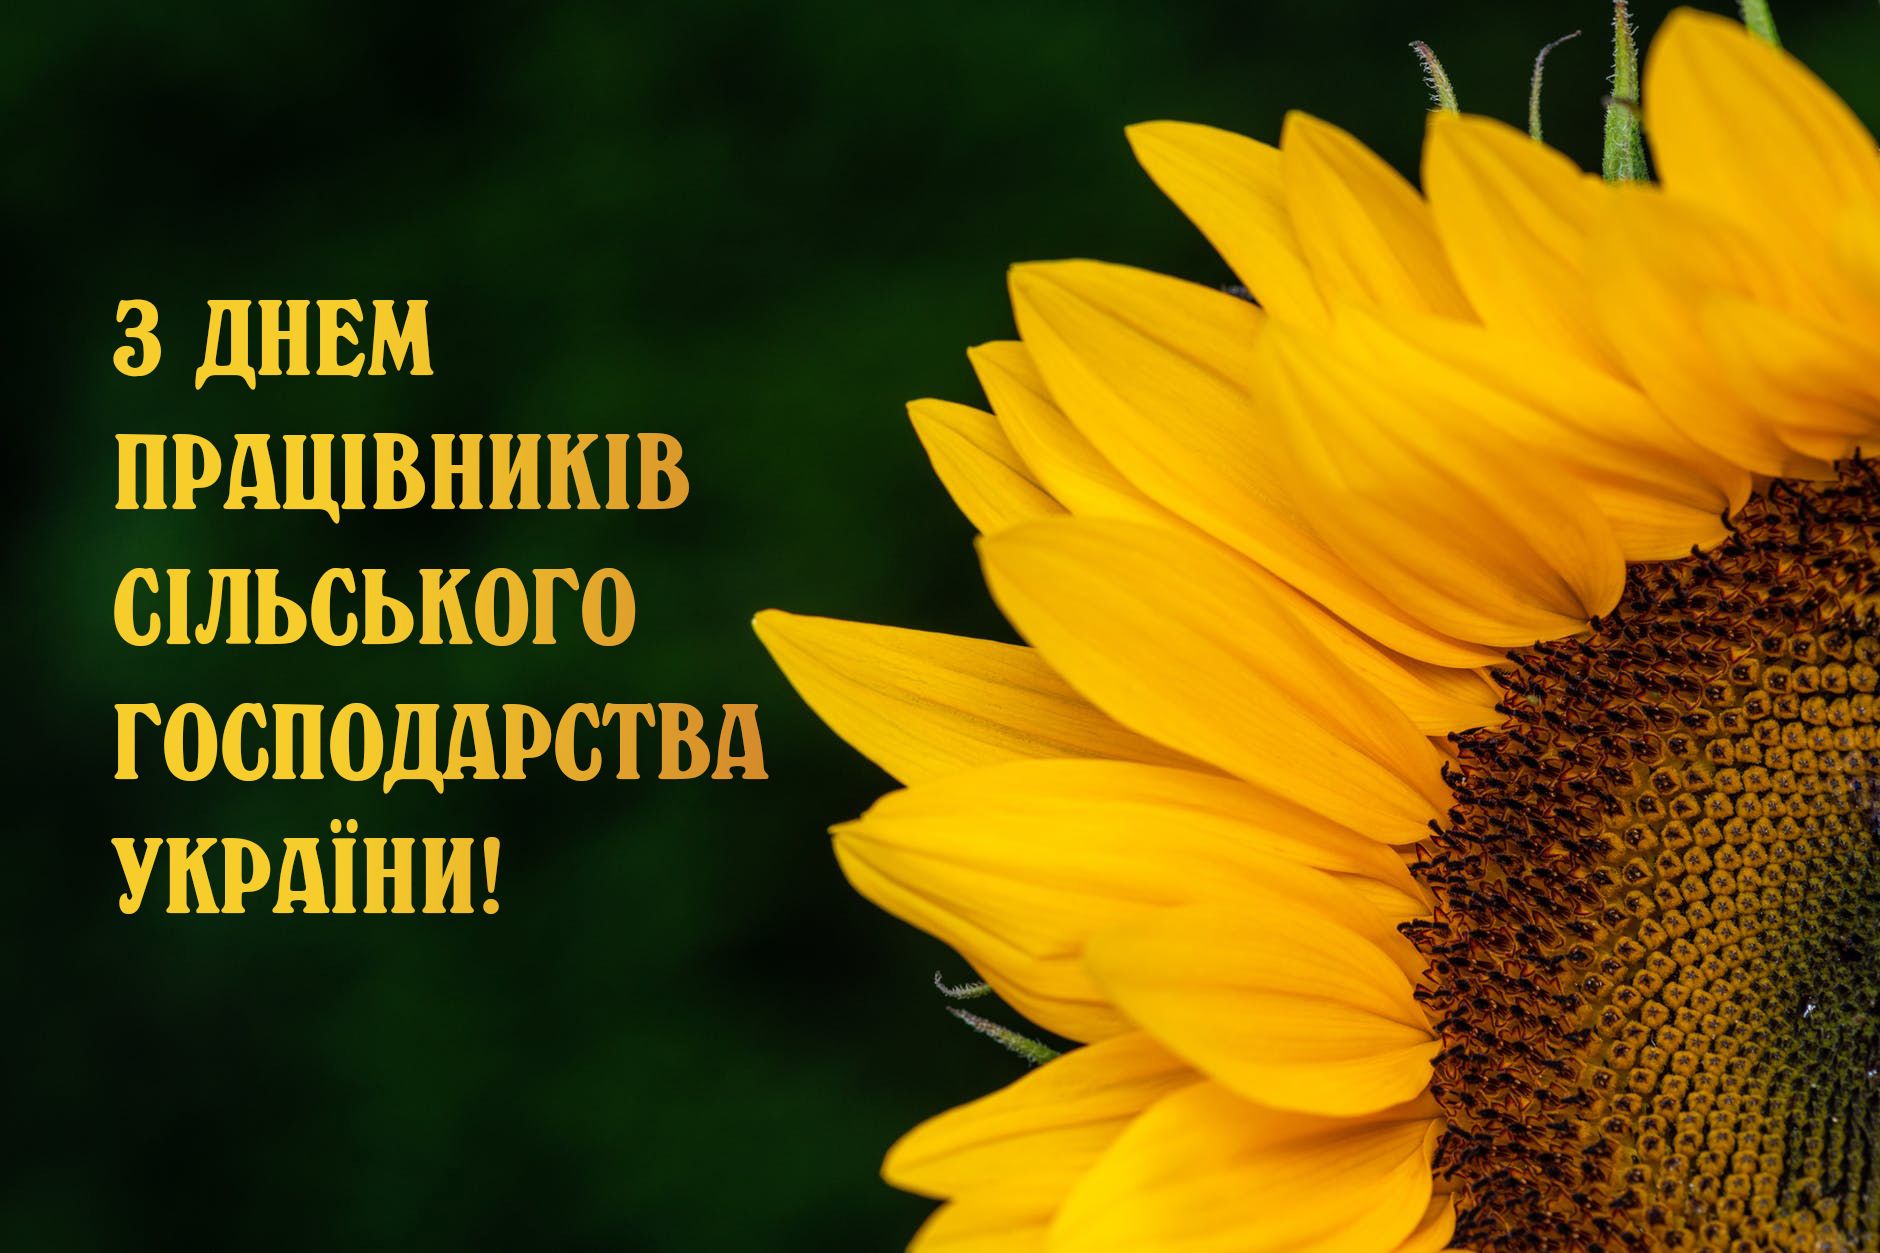 Привітання з Днем працівників сільскього господарства України / © 